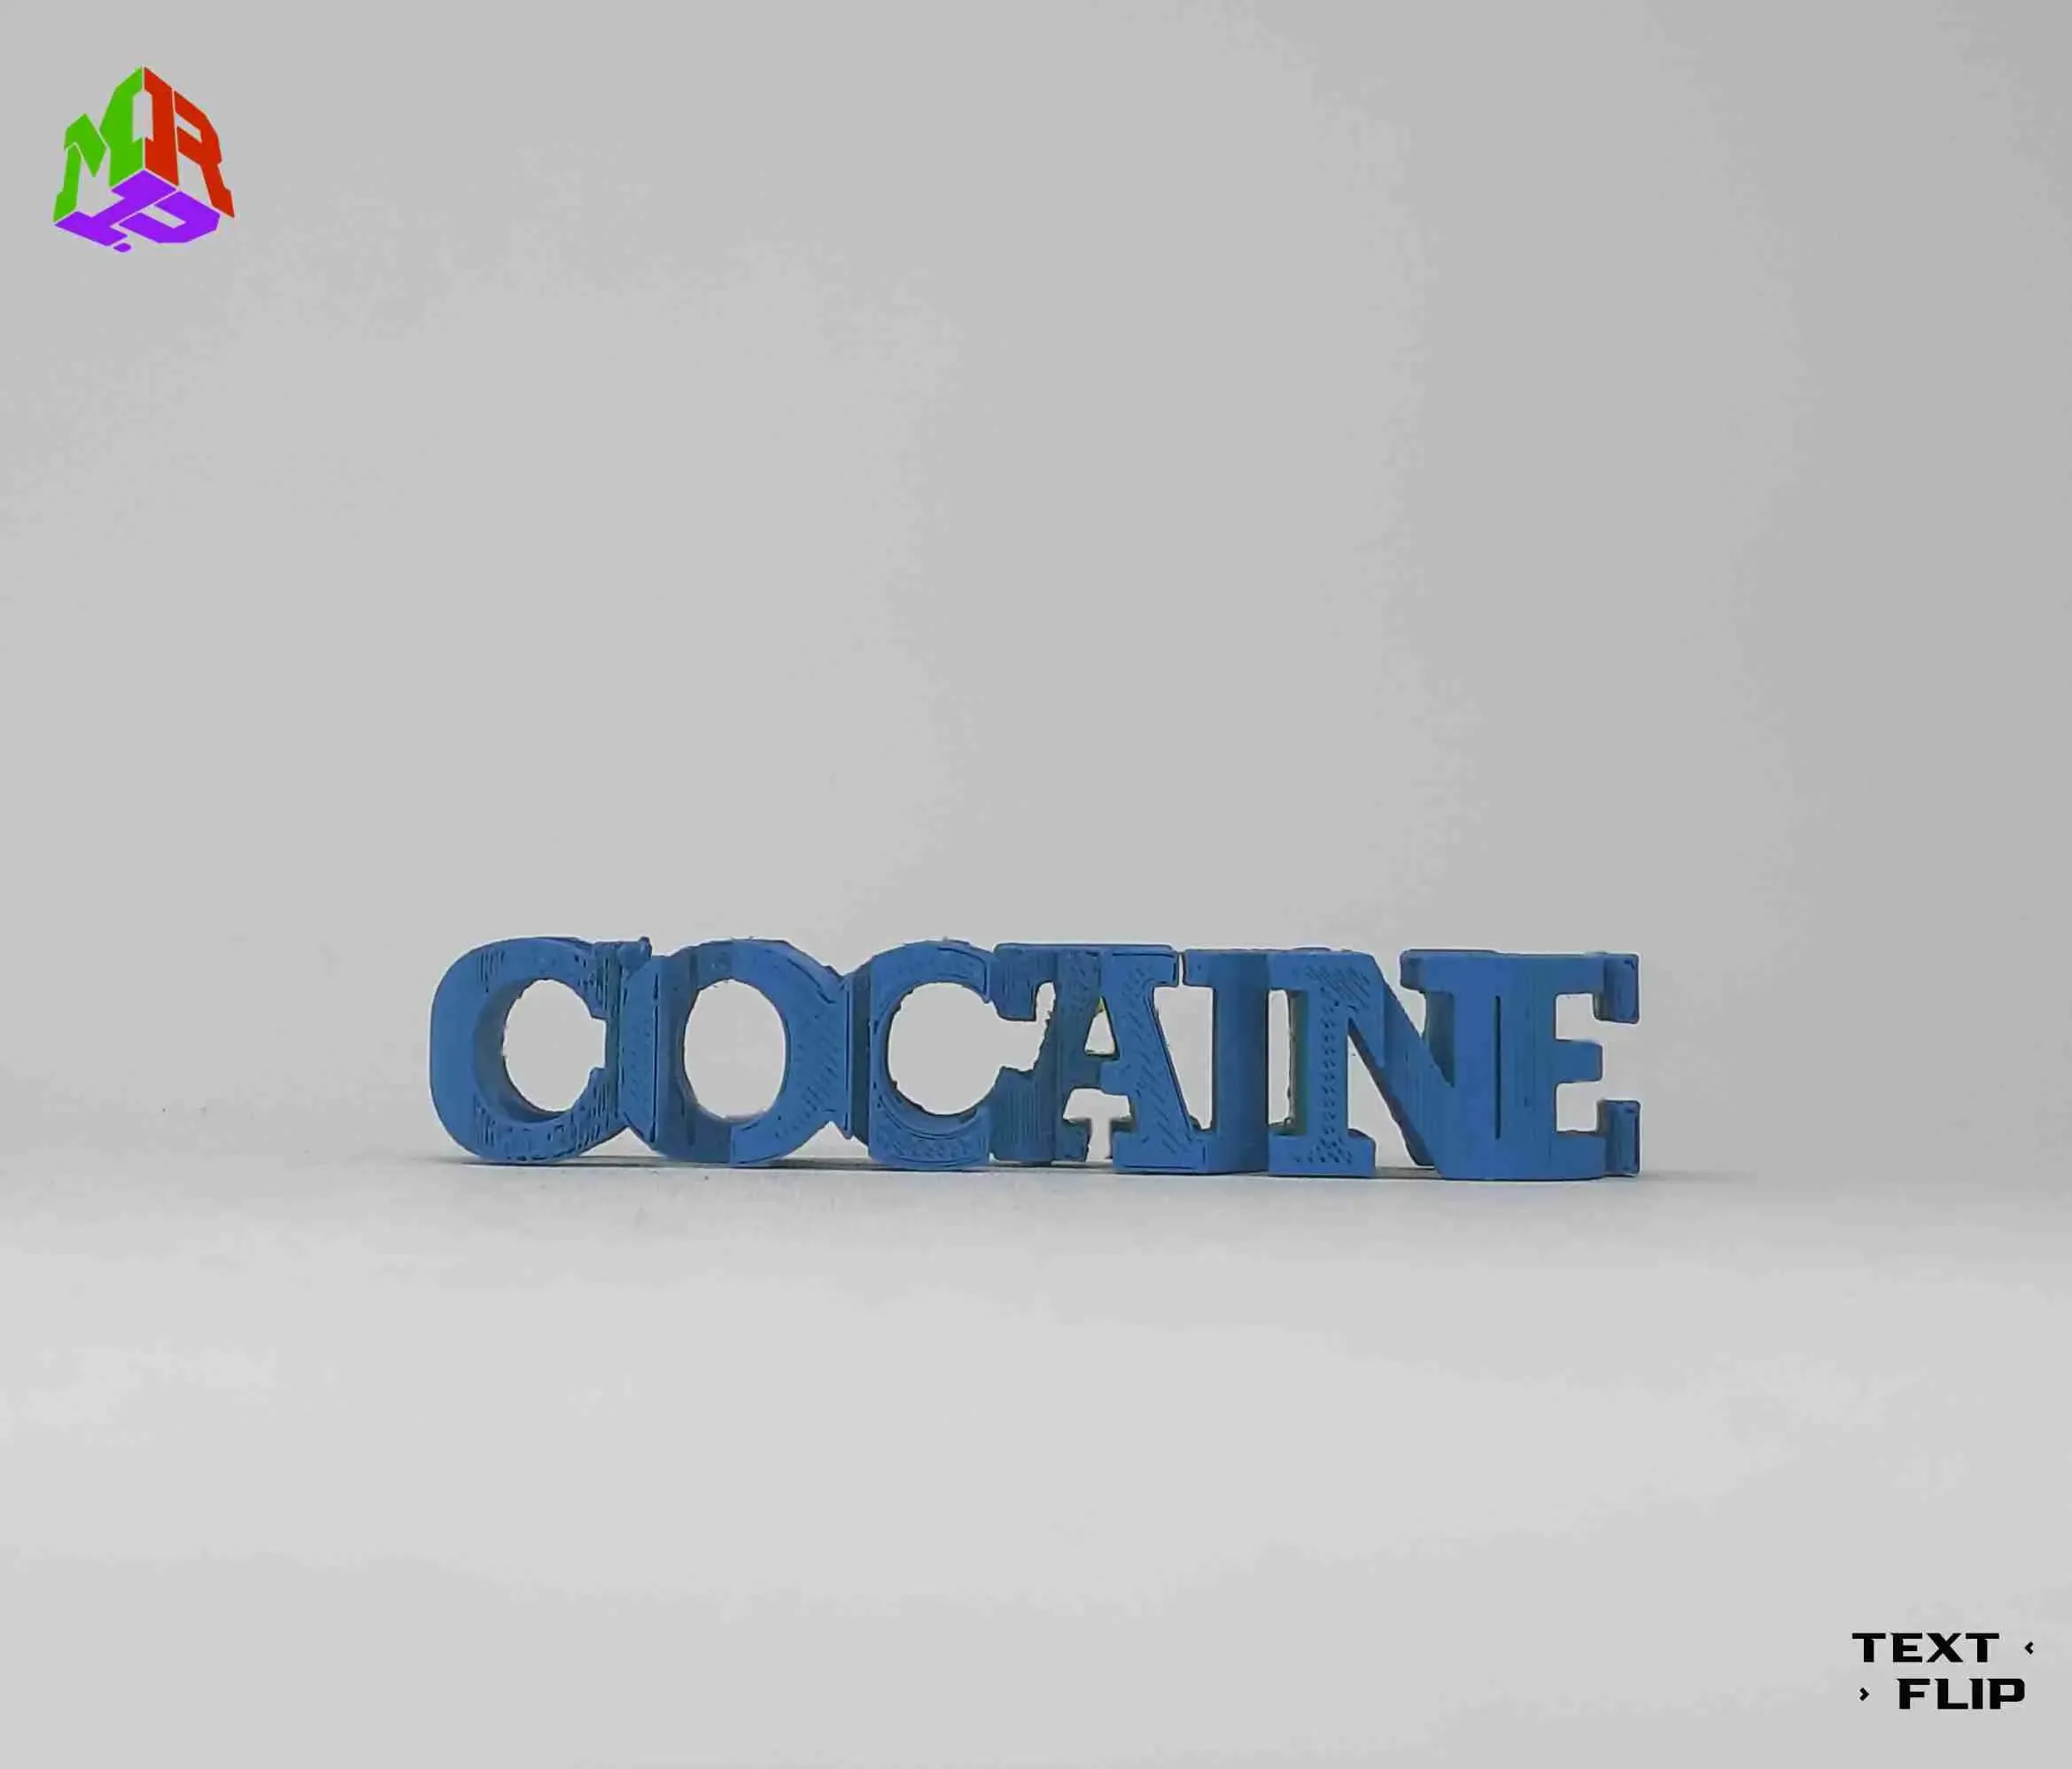 Text Flip - C17H21NO4 (Cocaine)